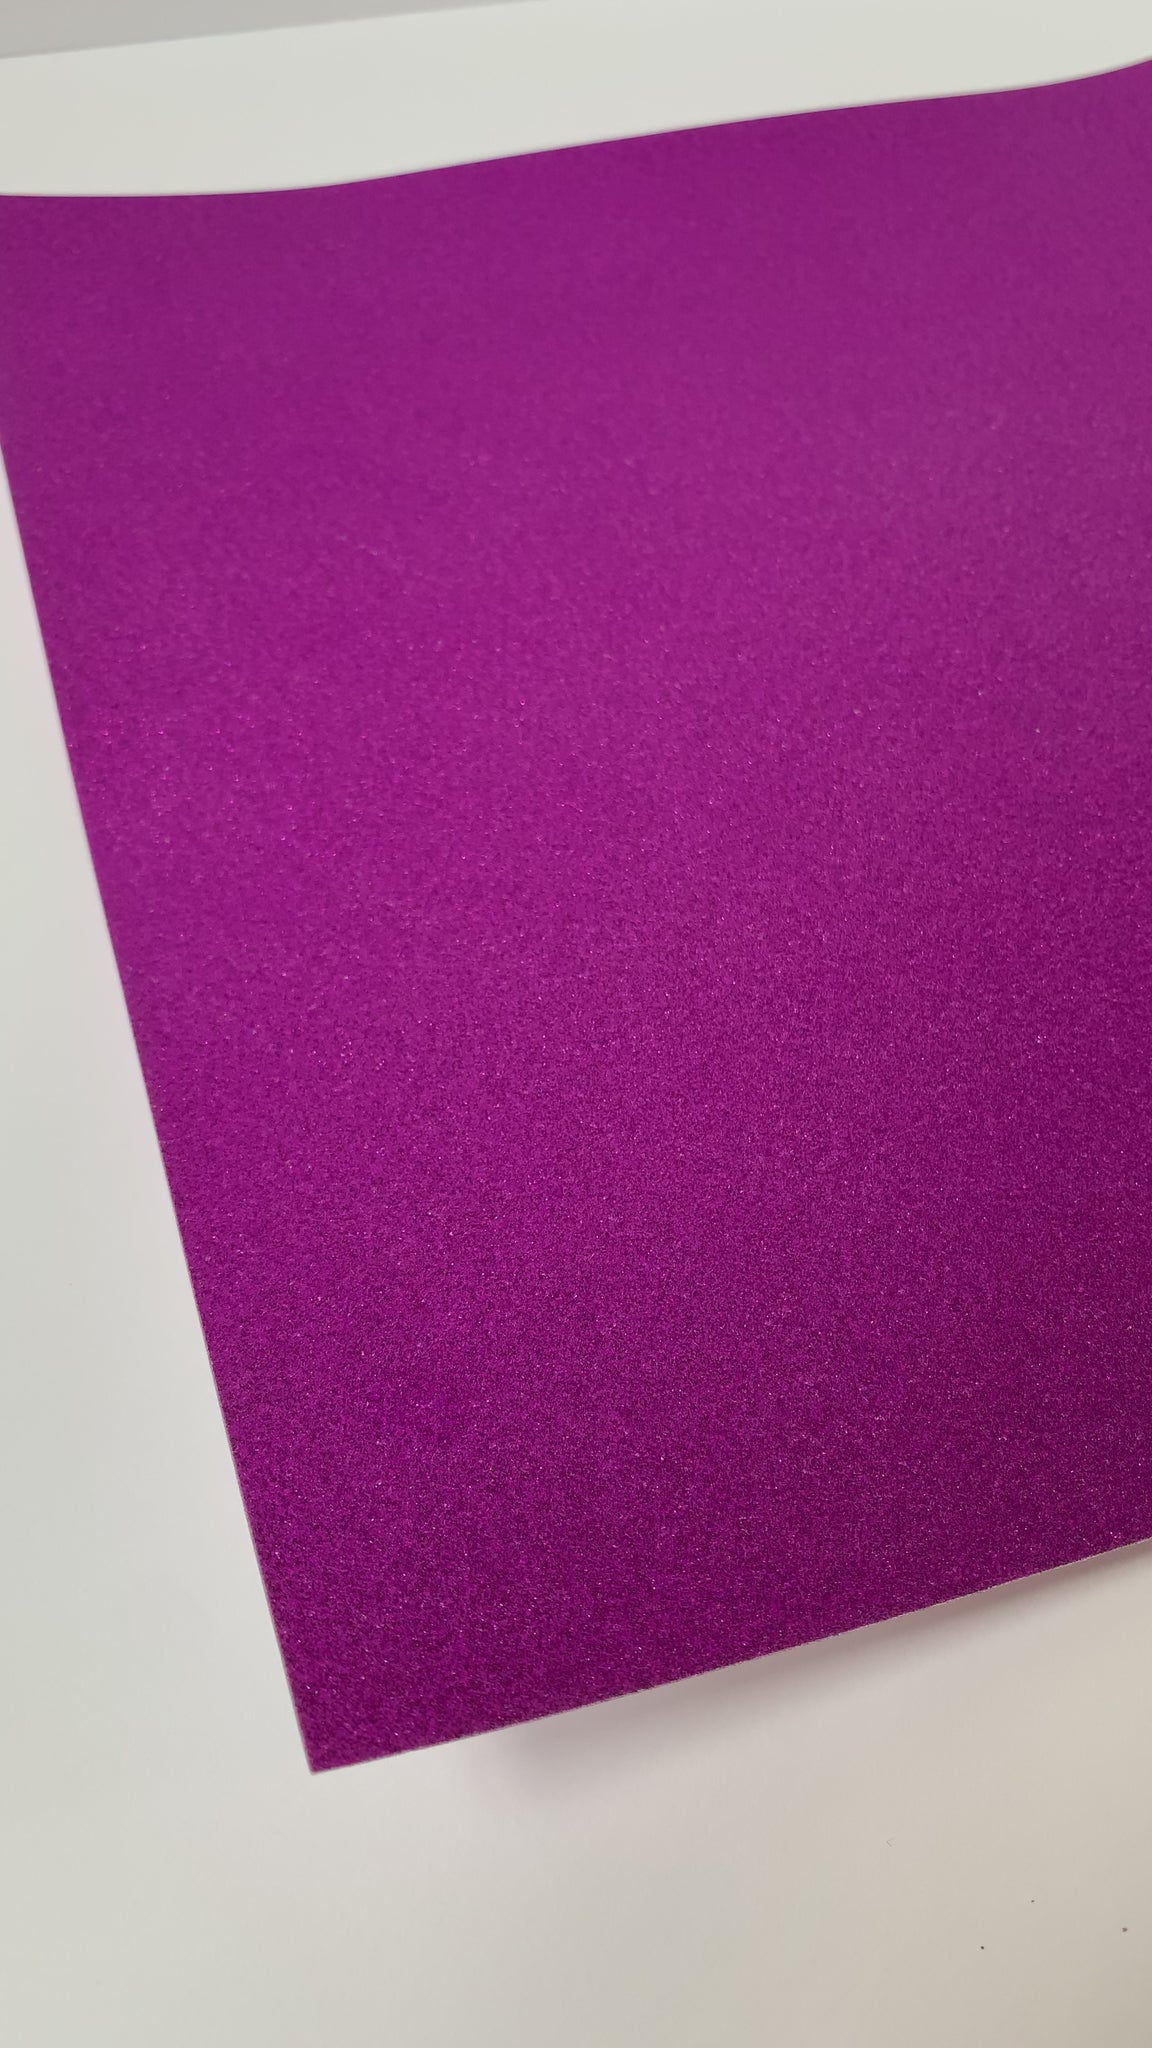 Grape Jelly Purple Cardstock Paper - 12 X 12 Inch 100 Lb